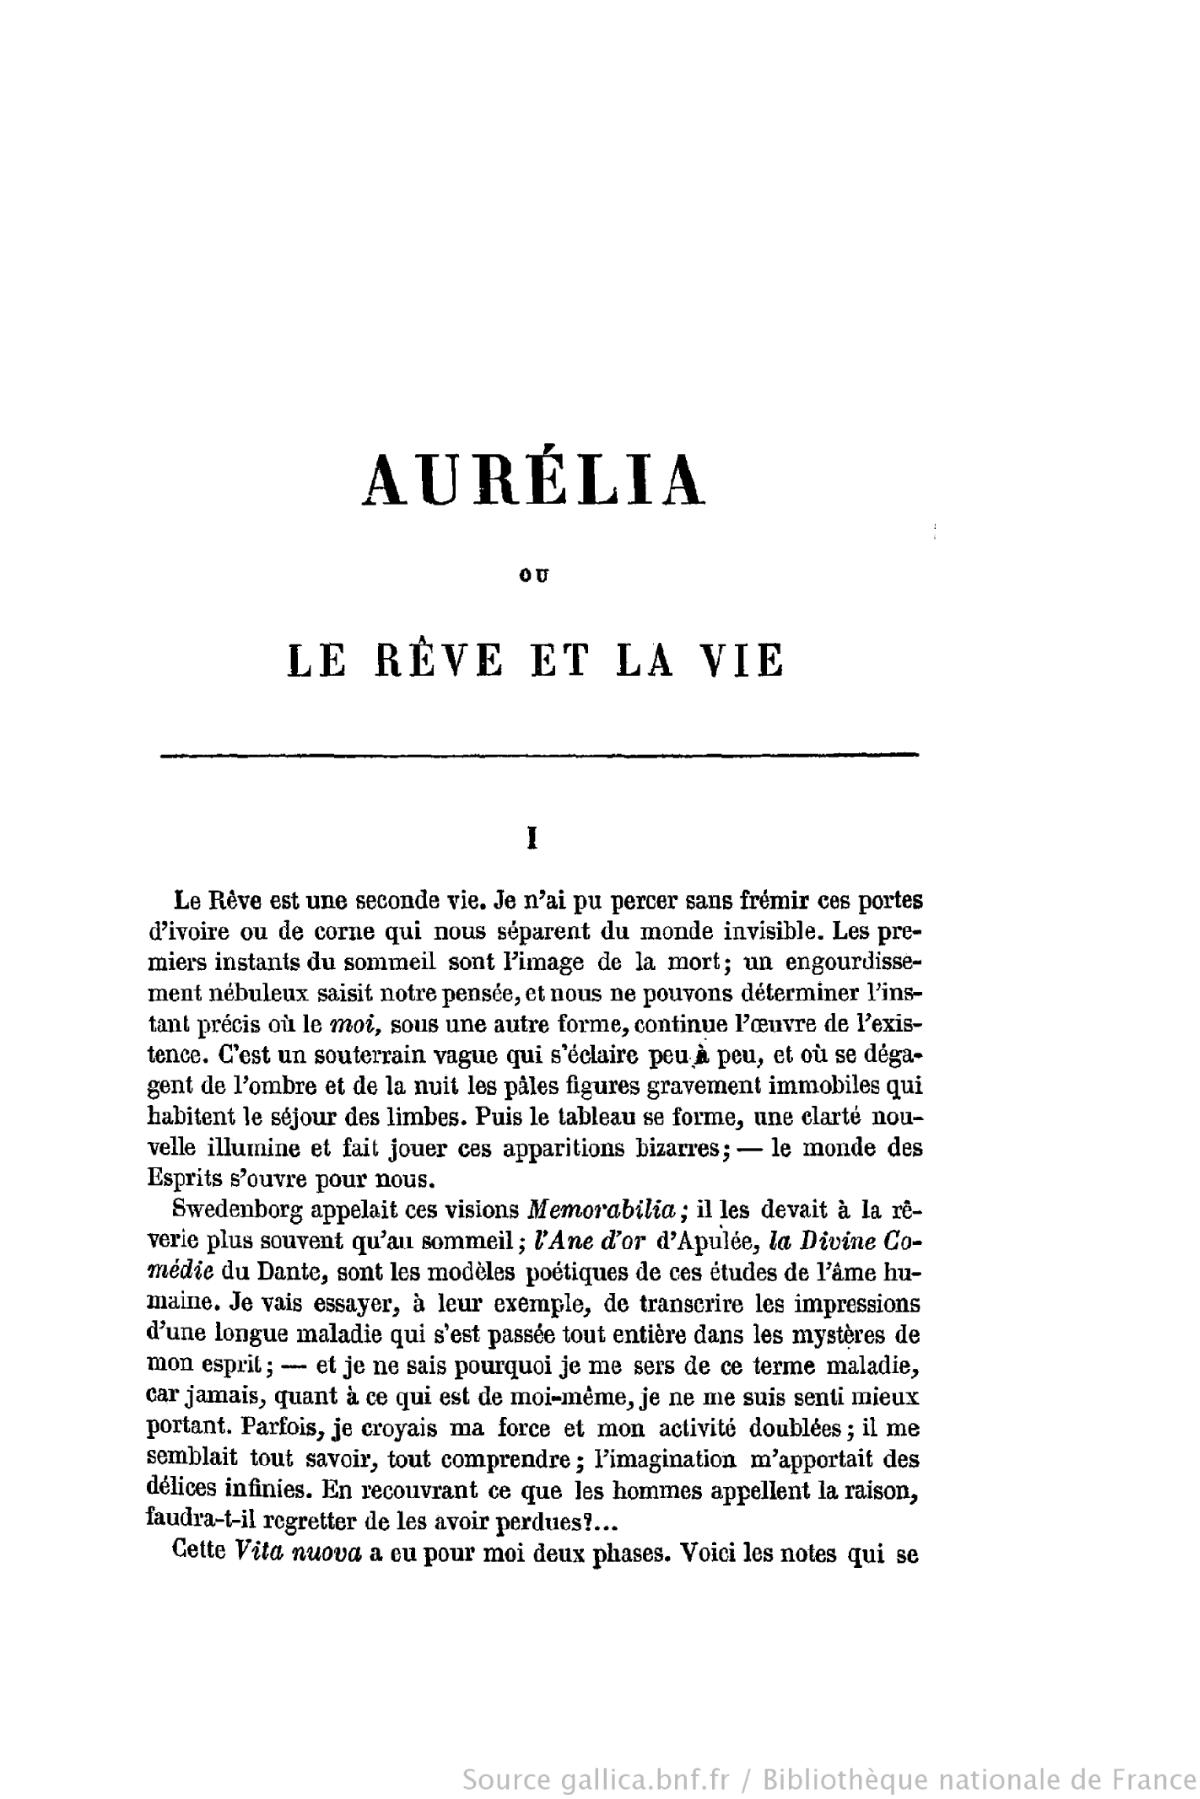 File:Nerval - Aurélia, 1855, Revue de Paris.djvu - Wikimedia Commons